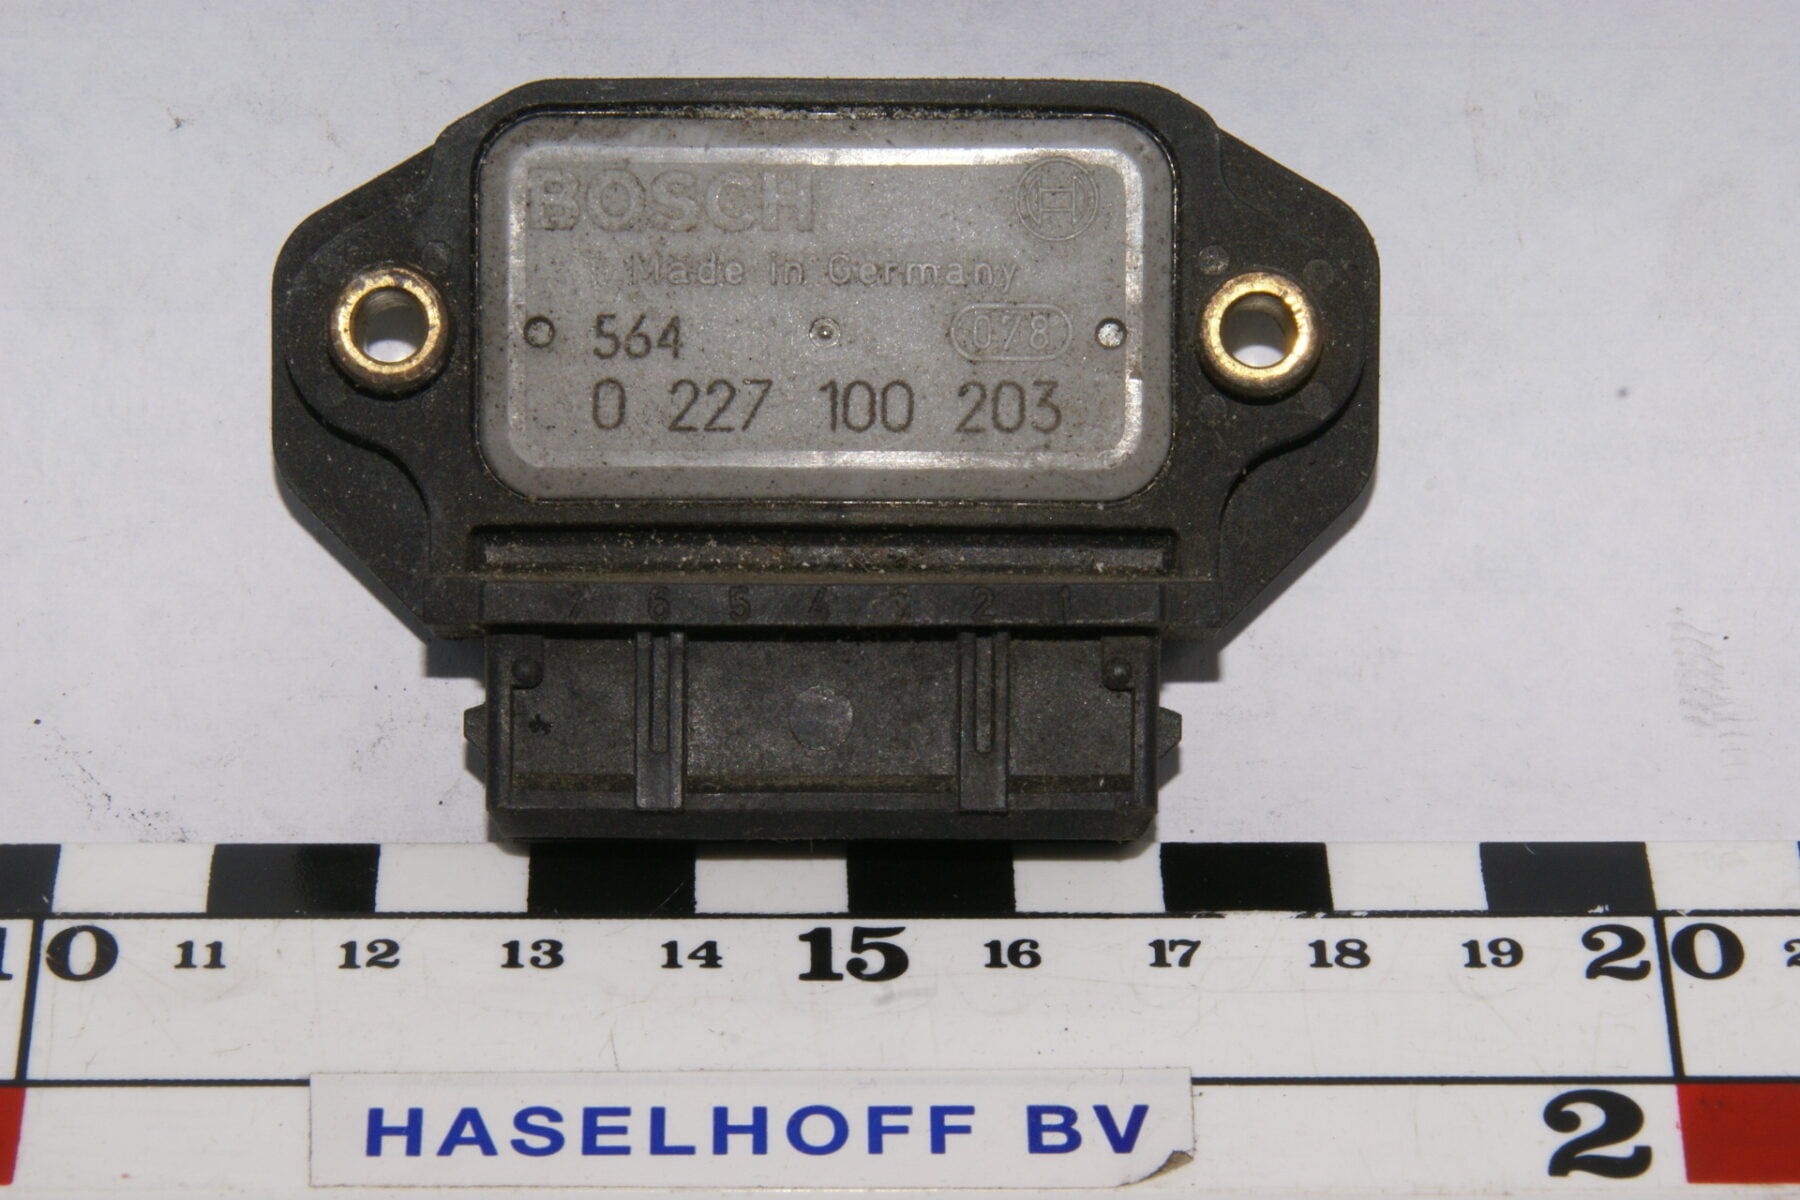 Bosch module 564 0227100203-0